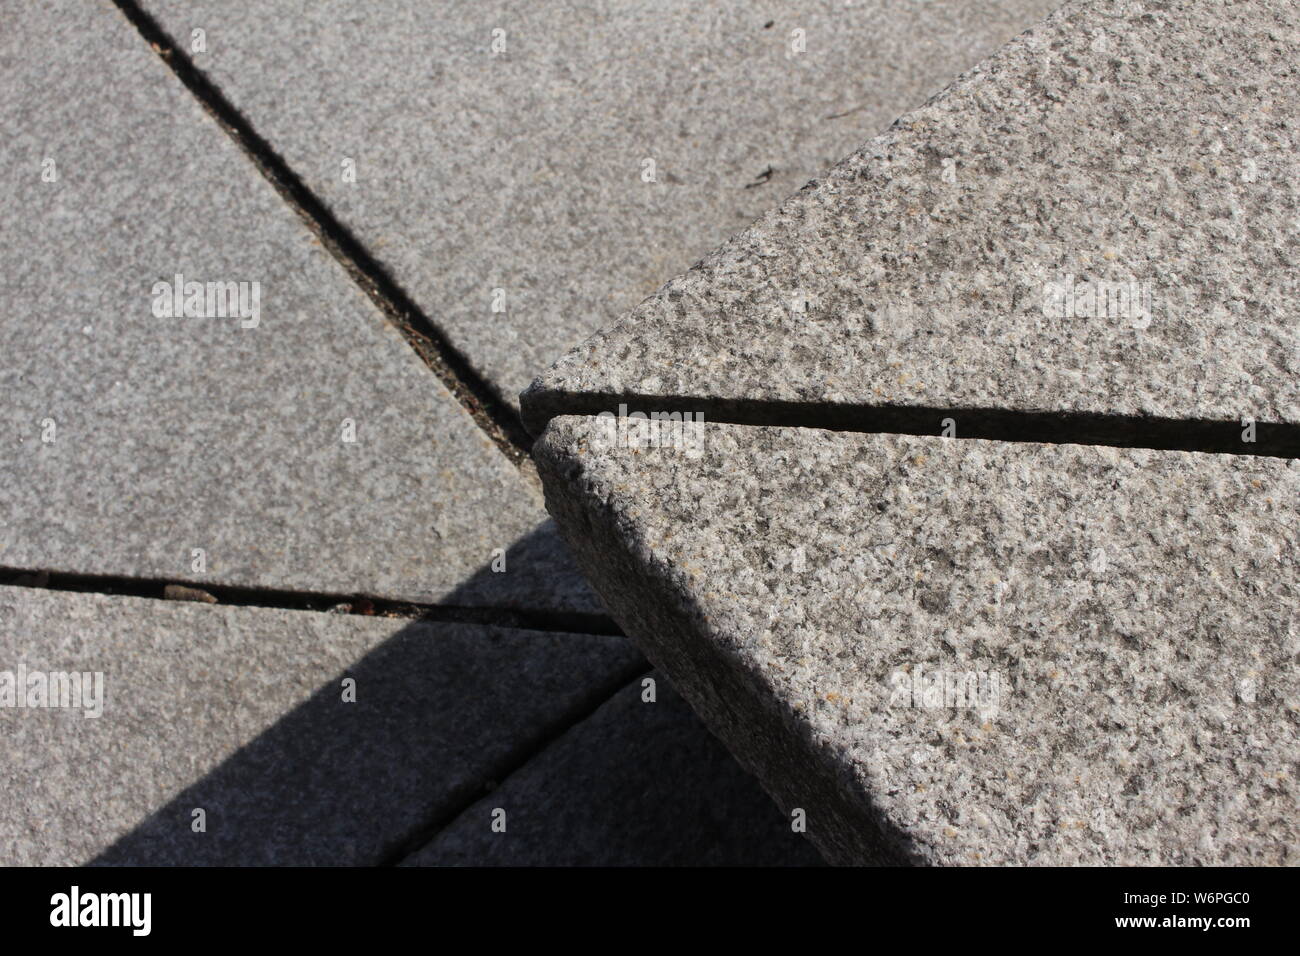 Geometric minimalism, pavement step, close up Stock Photo